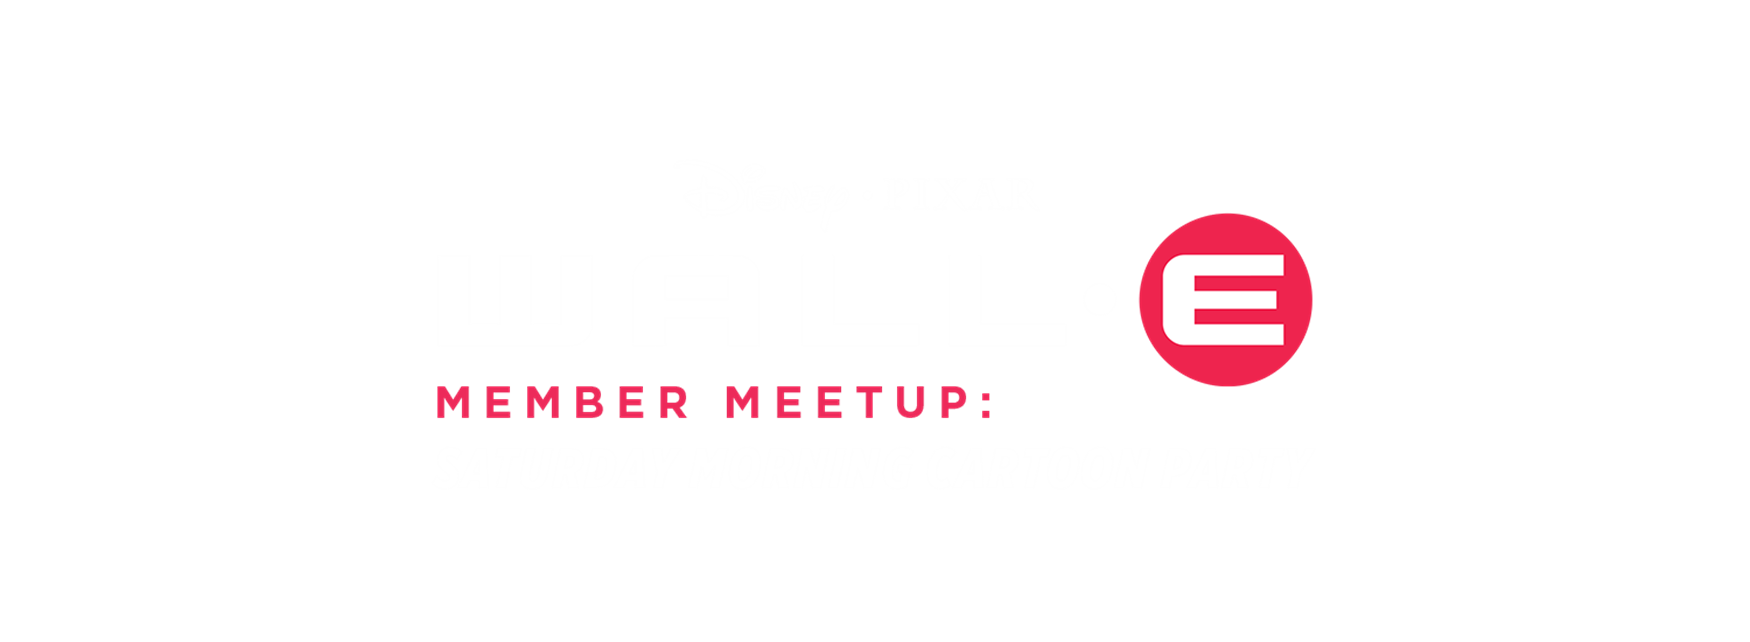 Member Meetup: Saturday Morning Cartoon Party